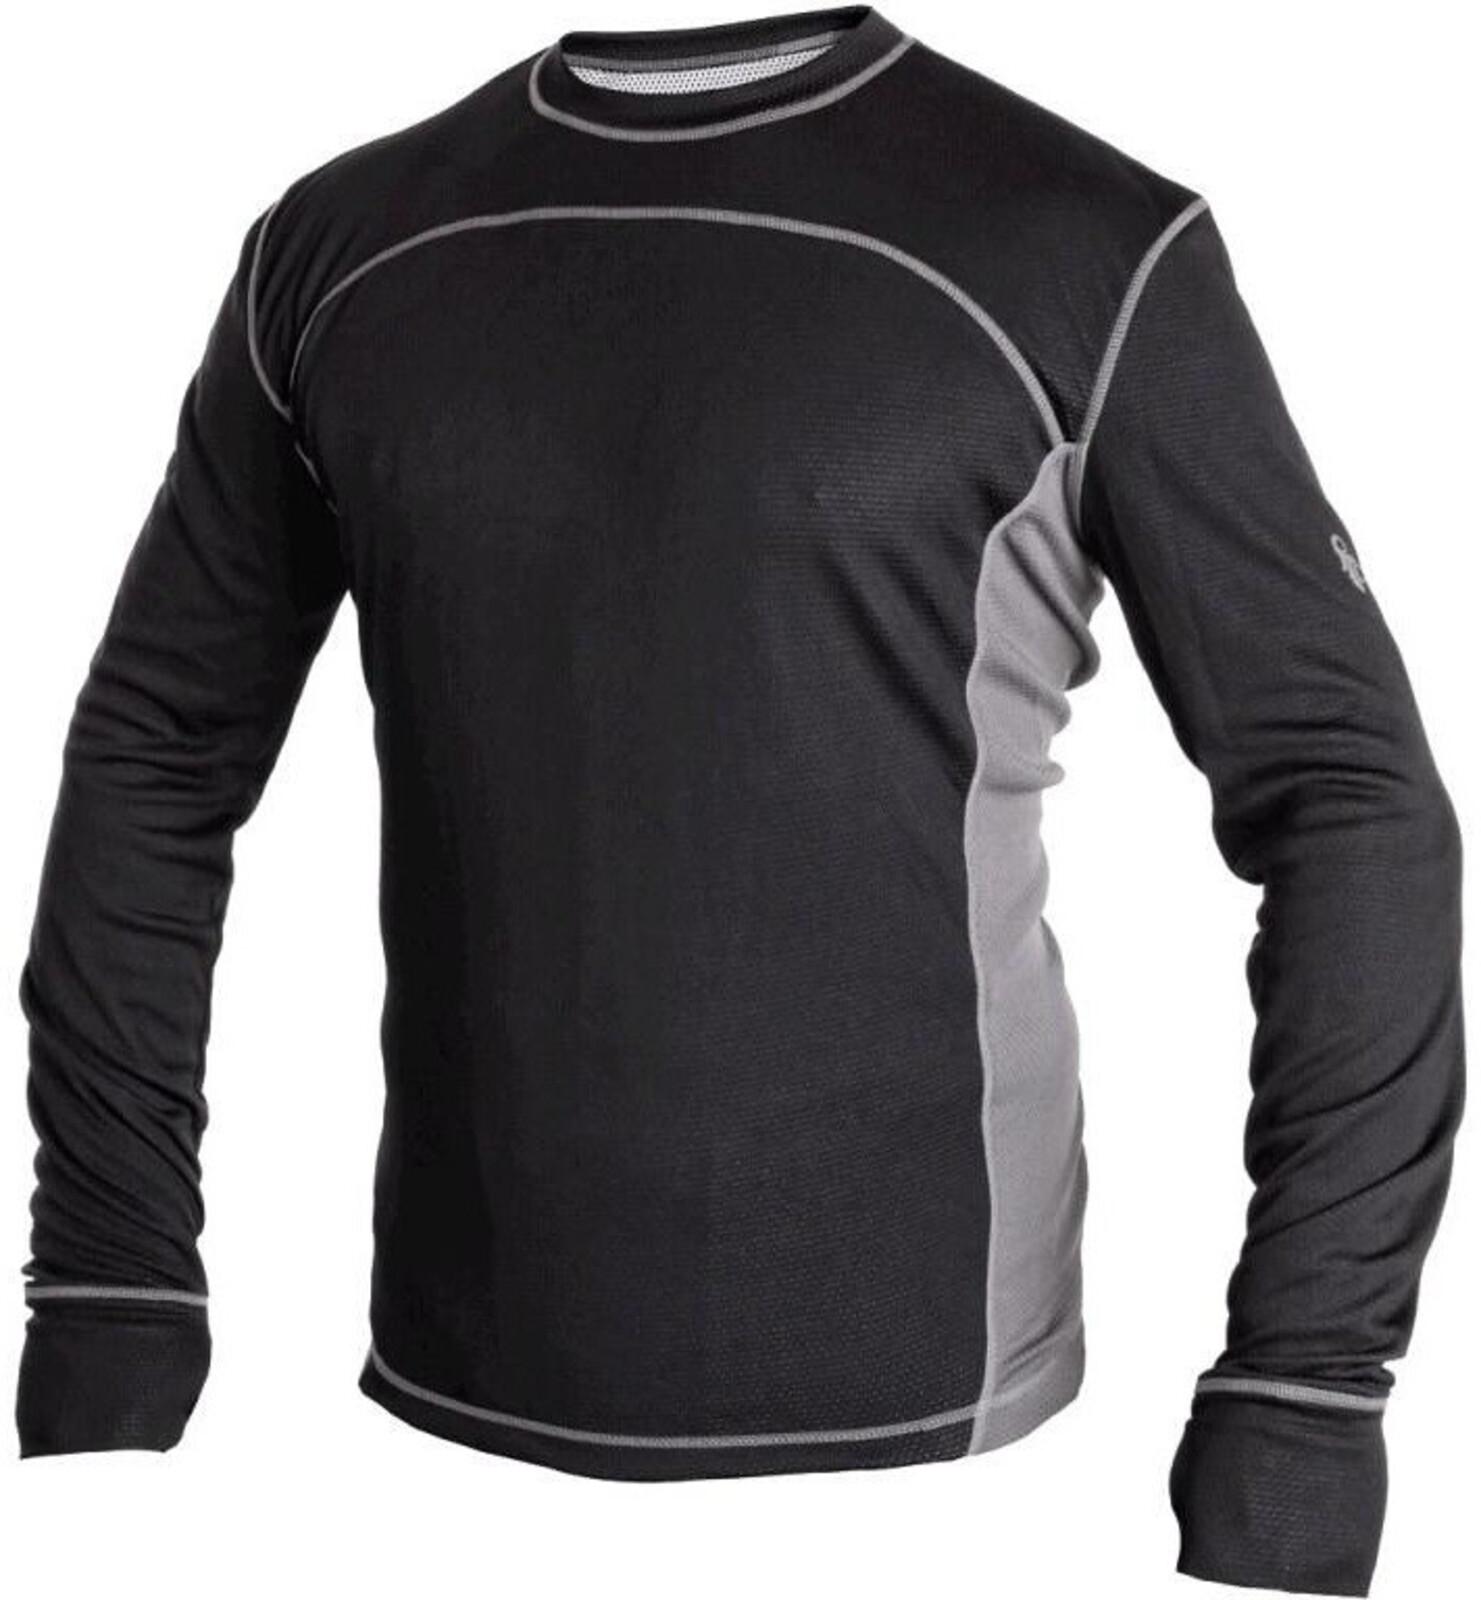 Pánske funkčné tričko s dlhým rukávom CXS Cooldry - veľkosť: S, farba: čierna/sivá